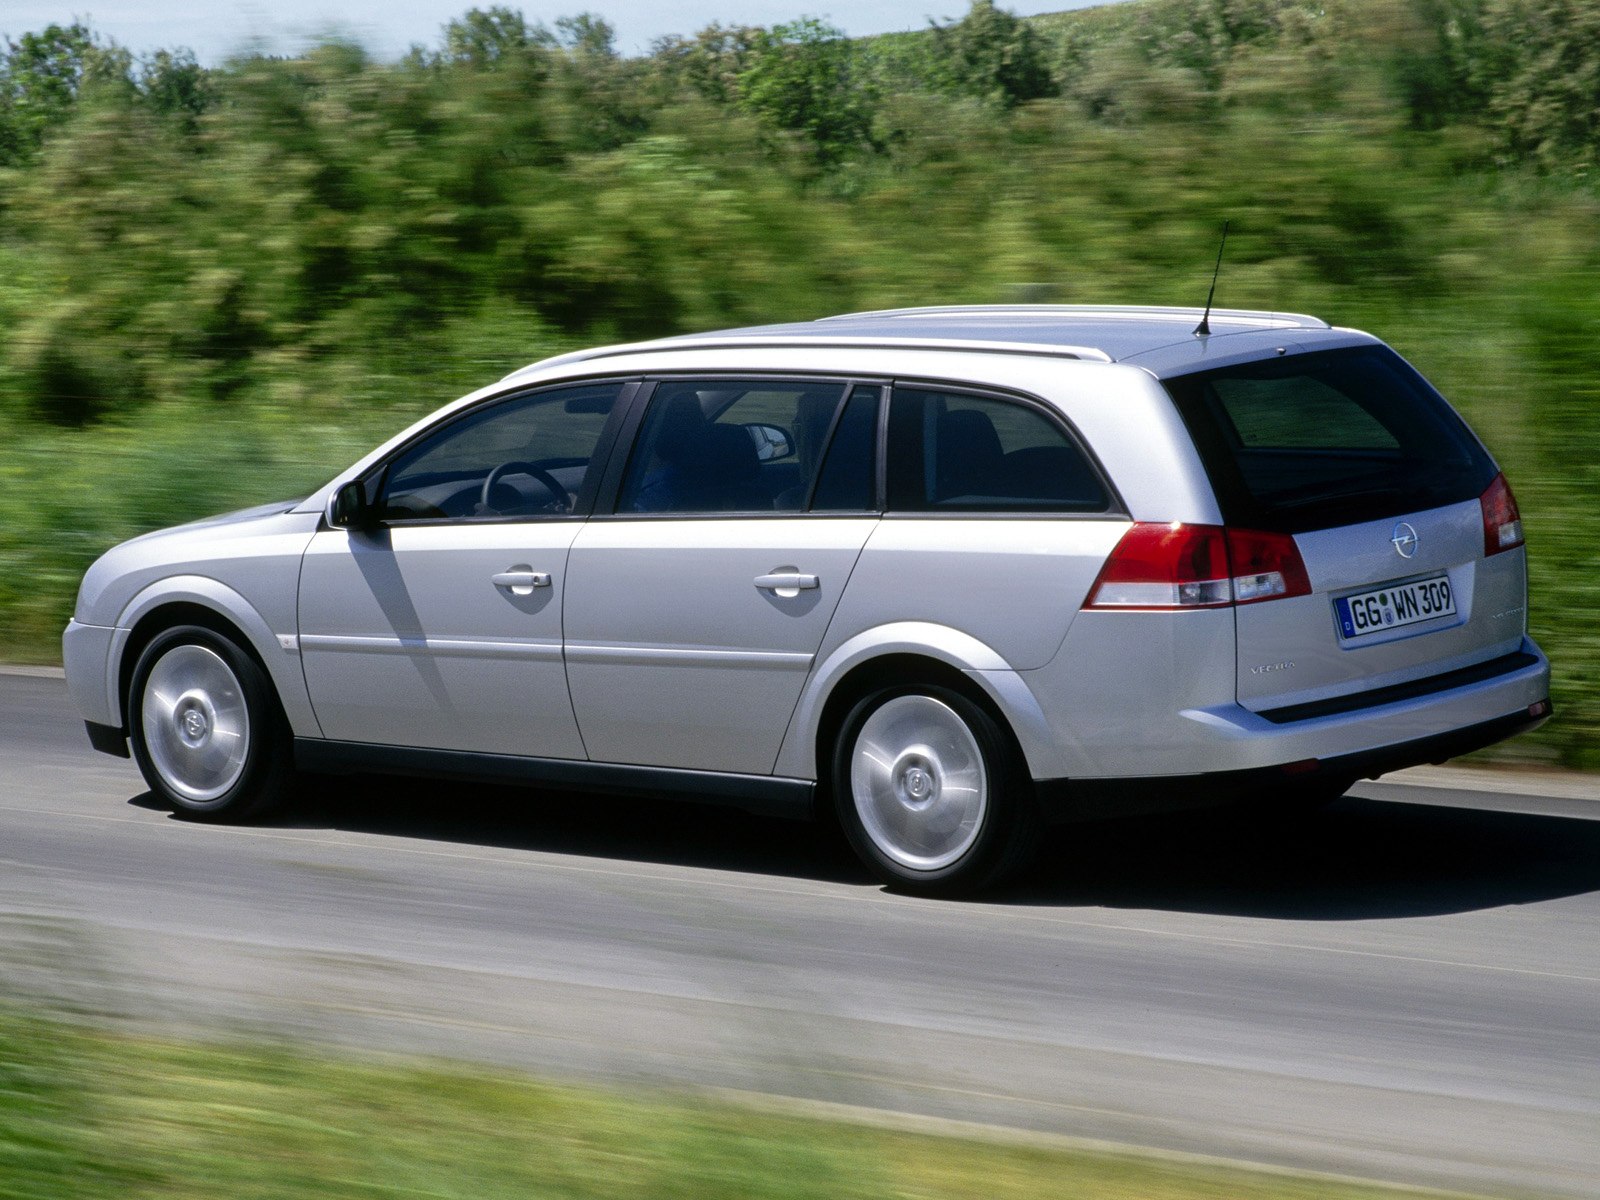 Вектра караван. Opel Vectra 2003 универсал. Opel Vectra c 1.8 универсал. Opel Vectra c 2003 универсал. Opel Vectra c 2005 универсал.